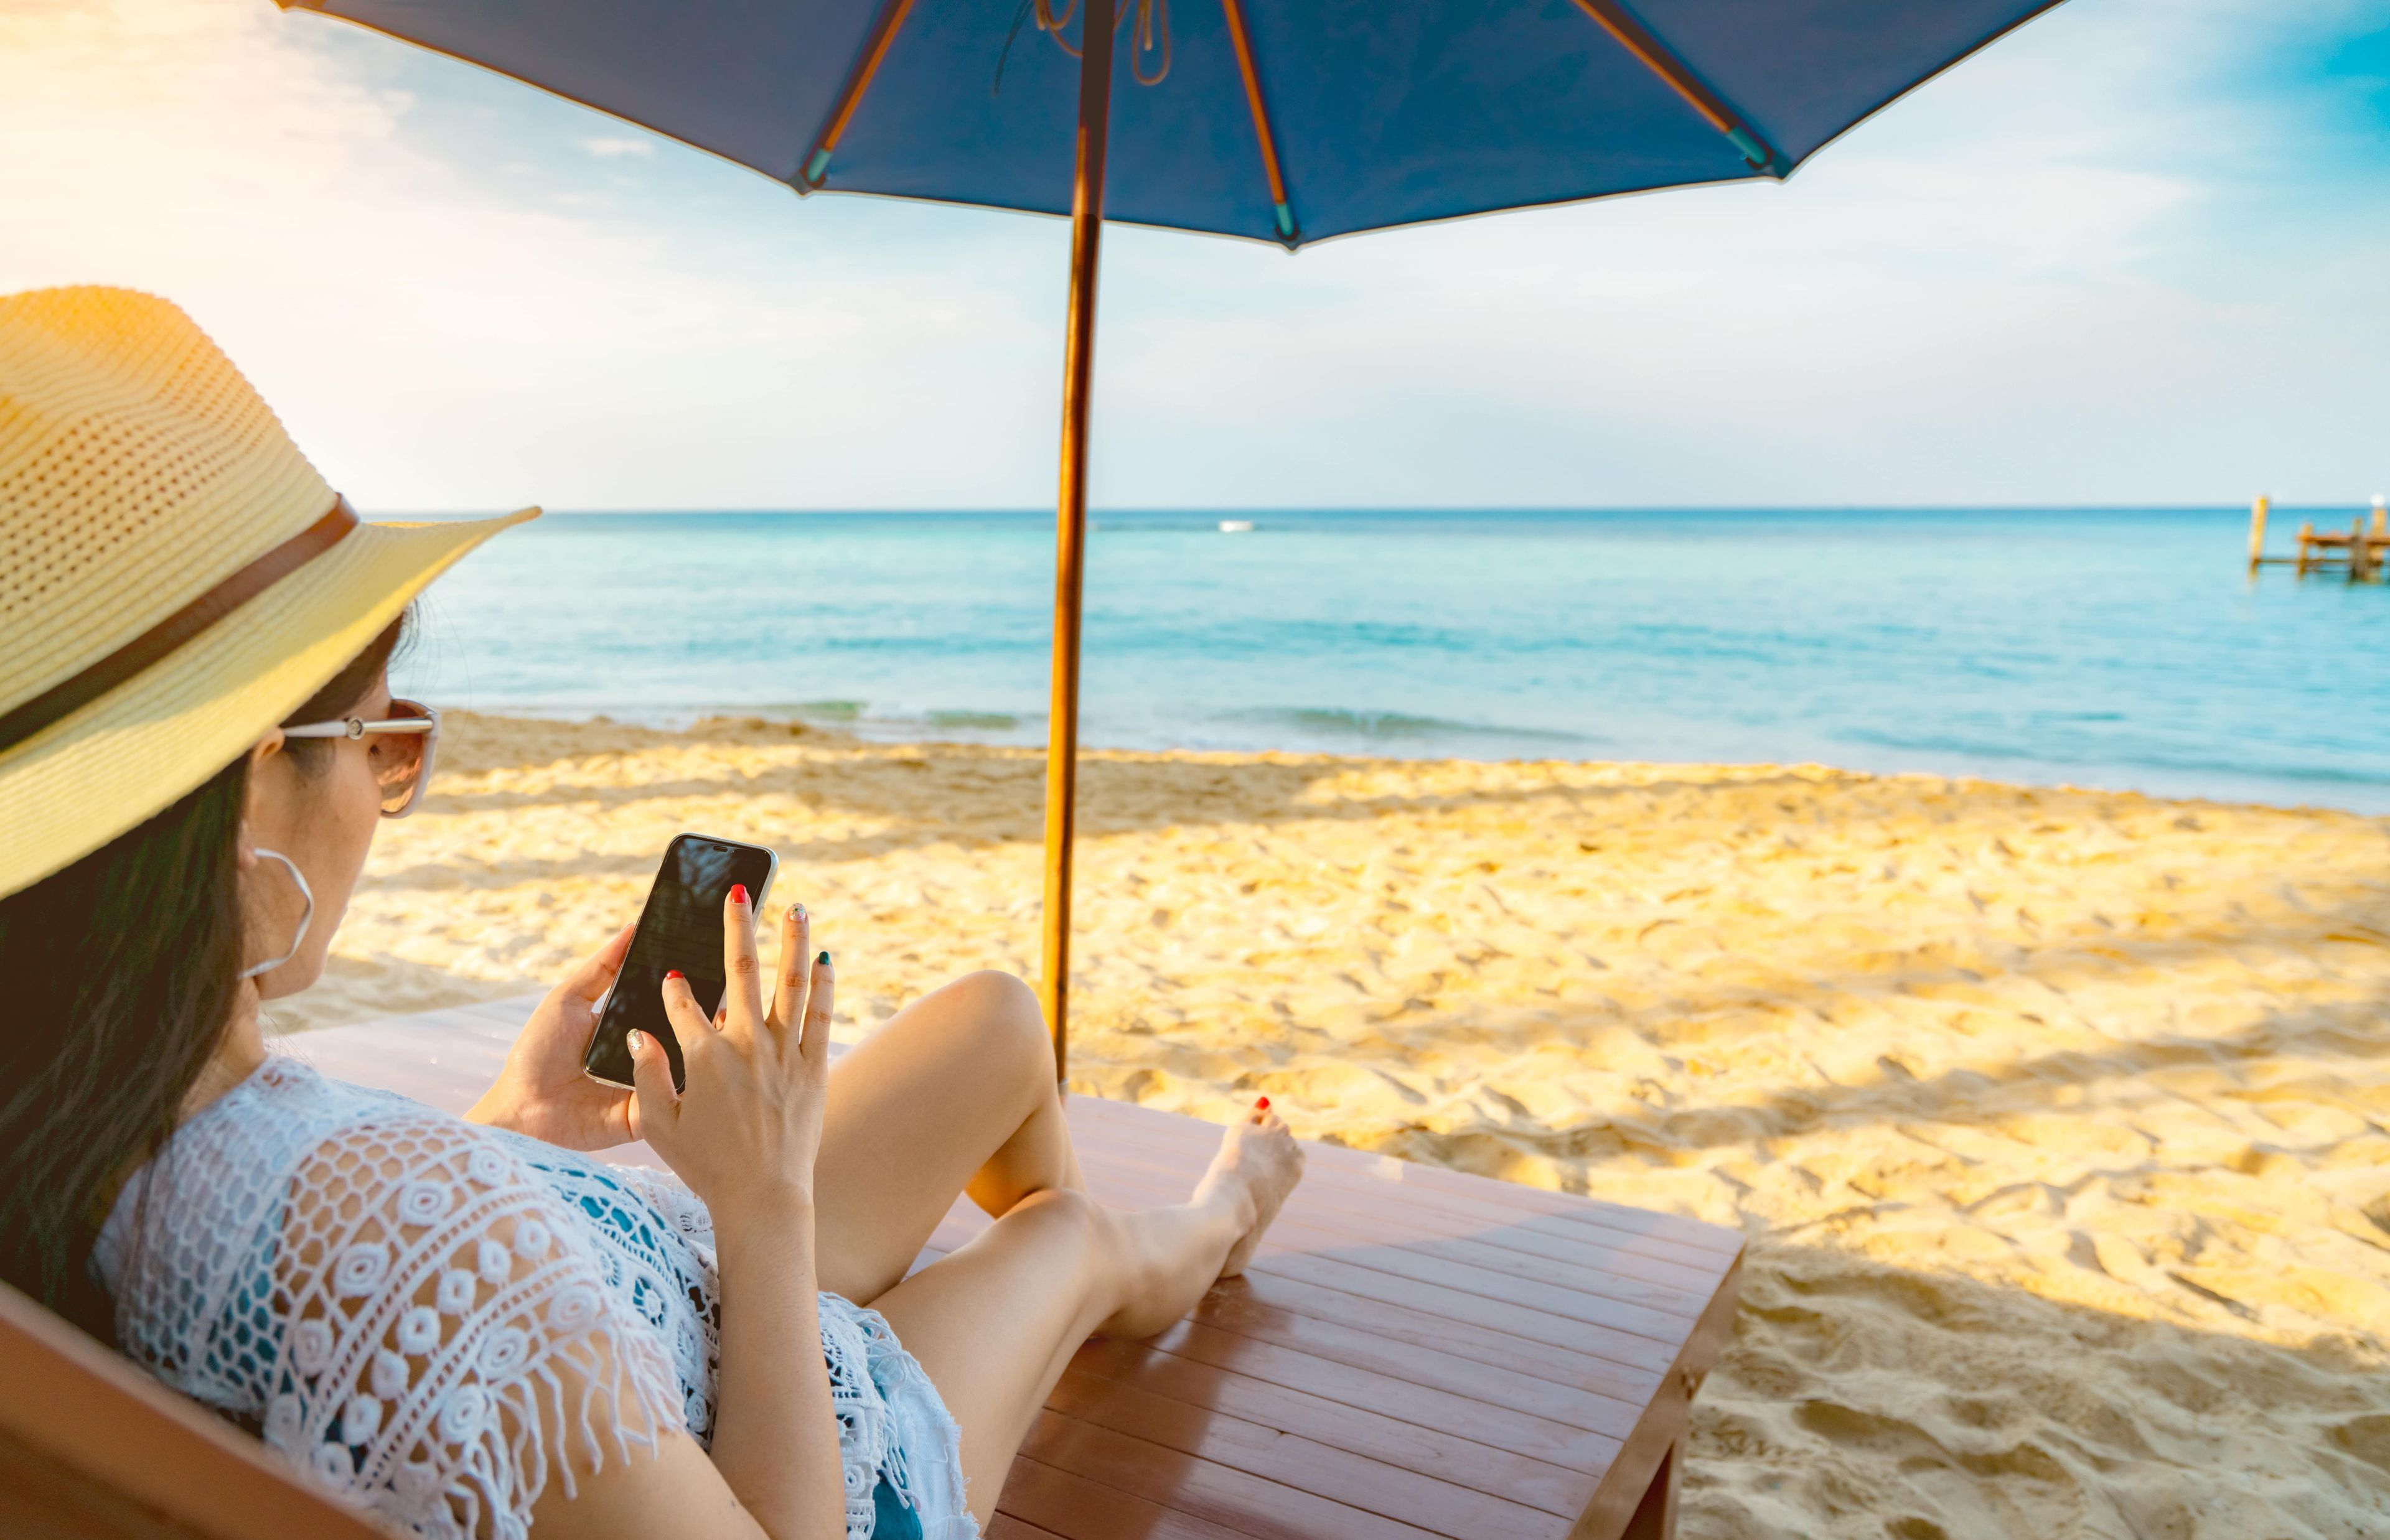 Con este accesorio de Lidl evitarás que te roben el móvil en la playa | Business Insider